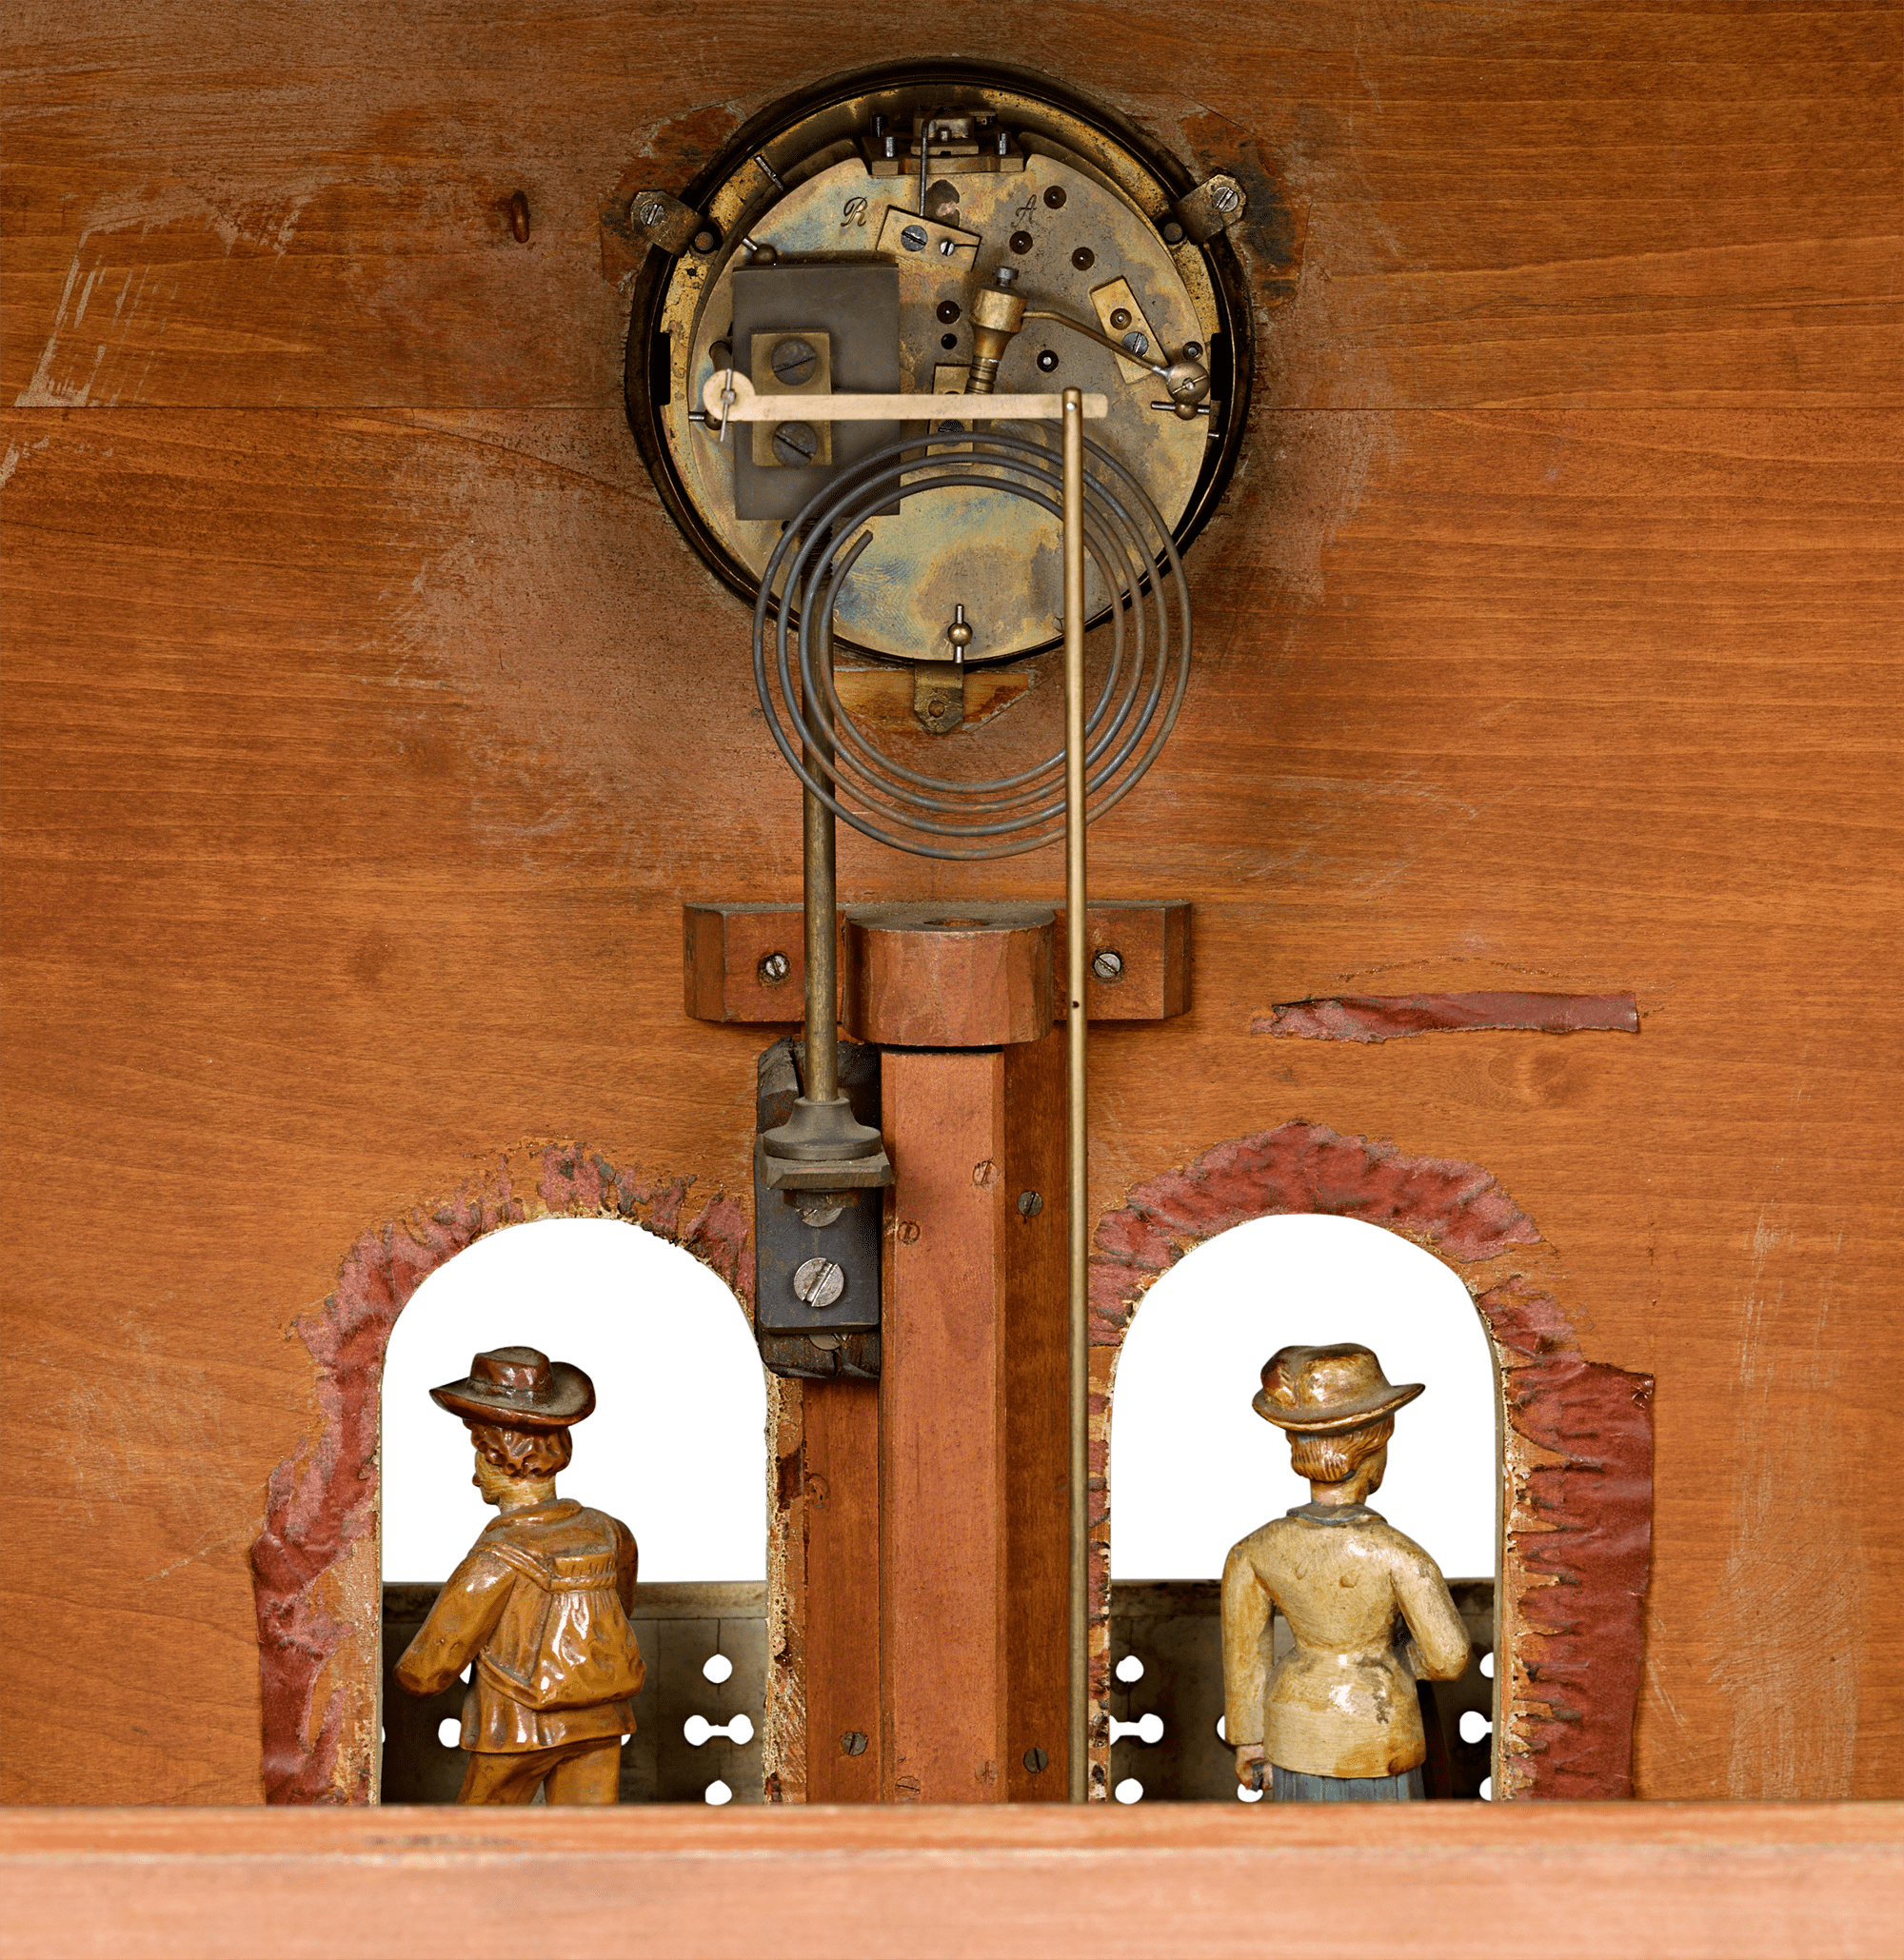 Automaton Clock and Music Box House